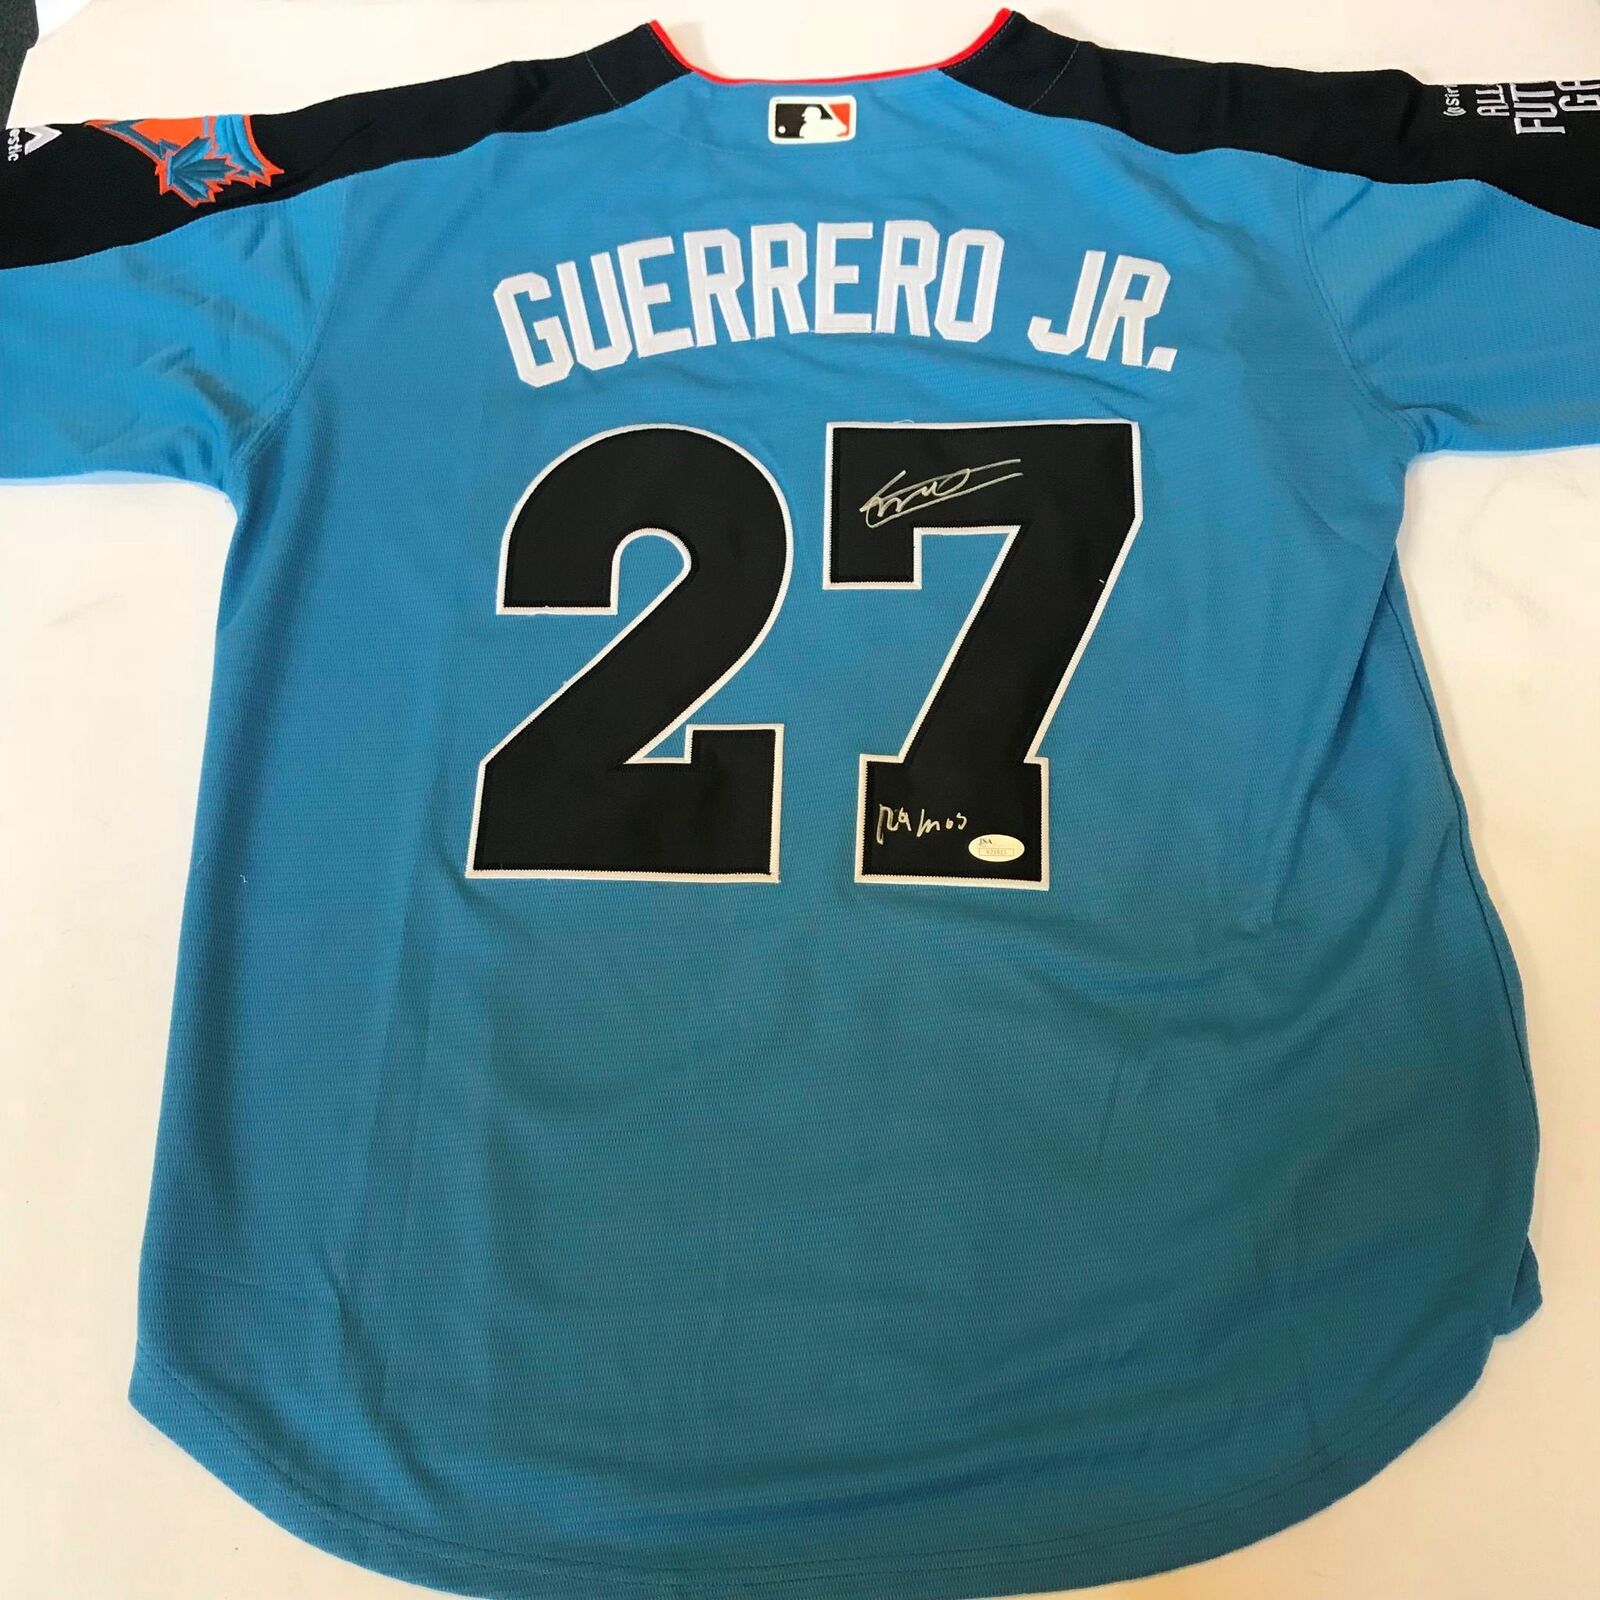 Vladimir Guerrero Jr. Signed Jersey (JSA COA)